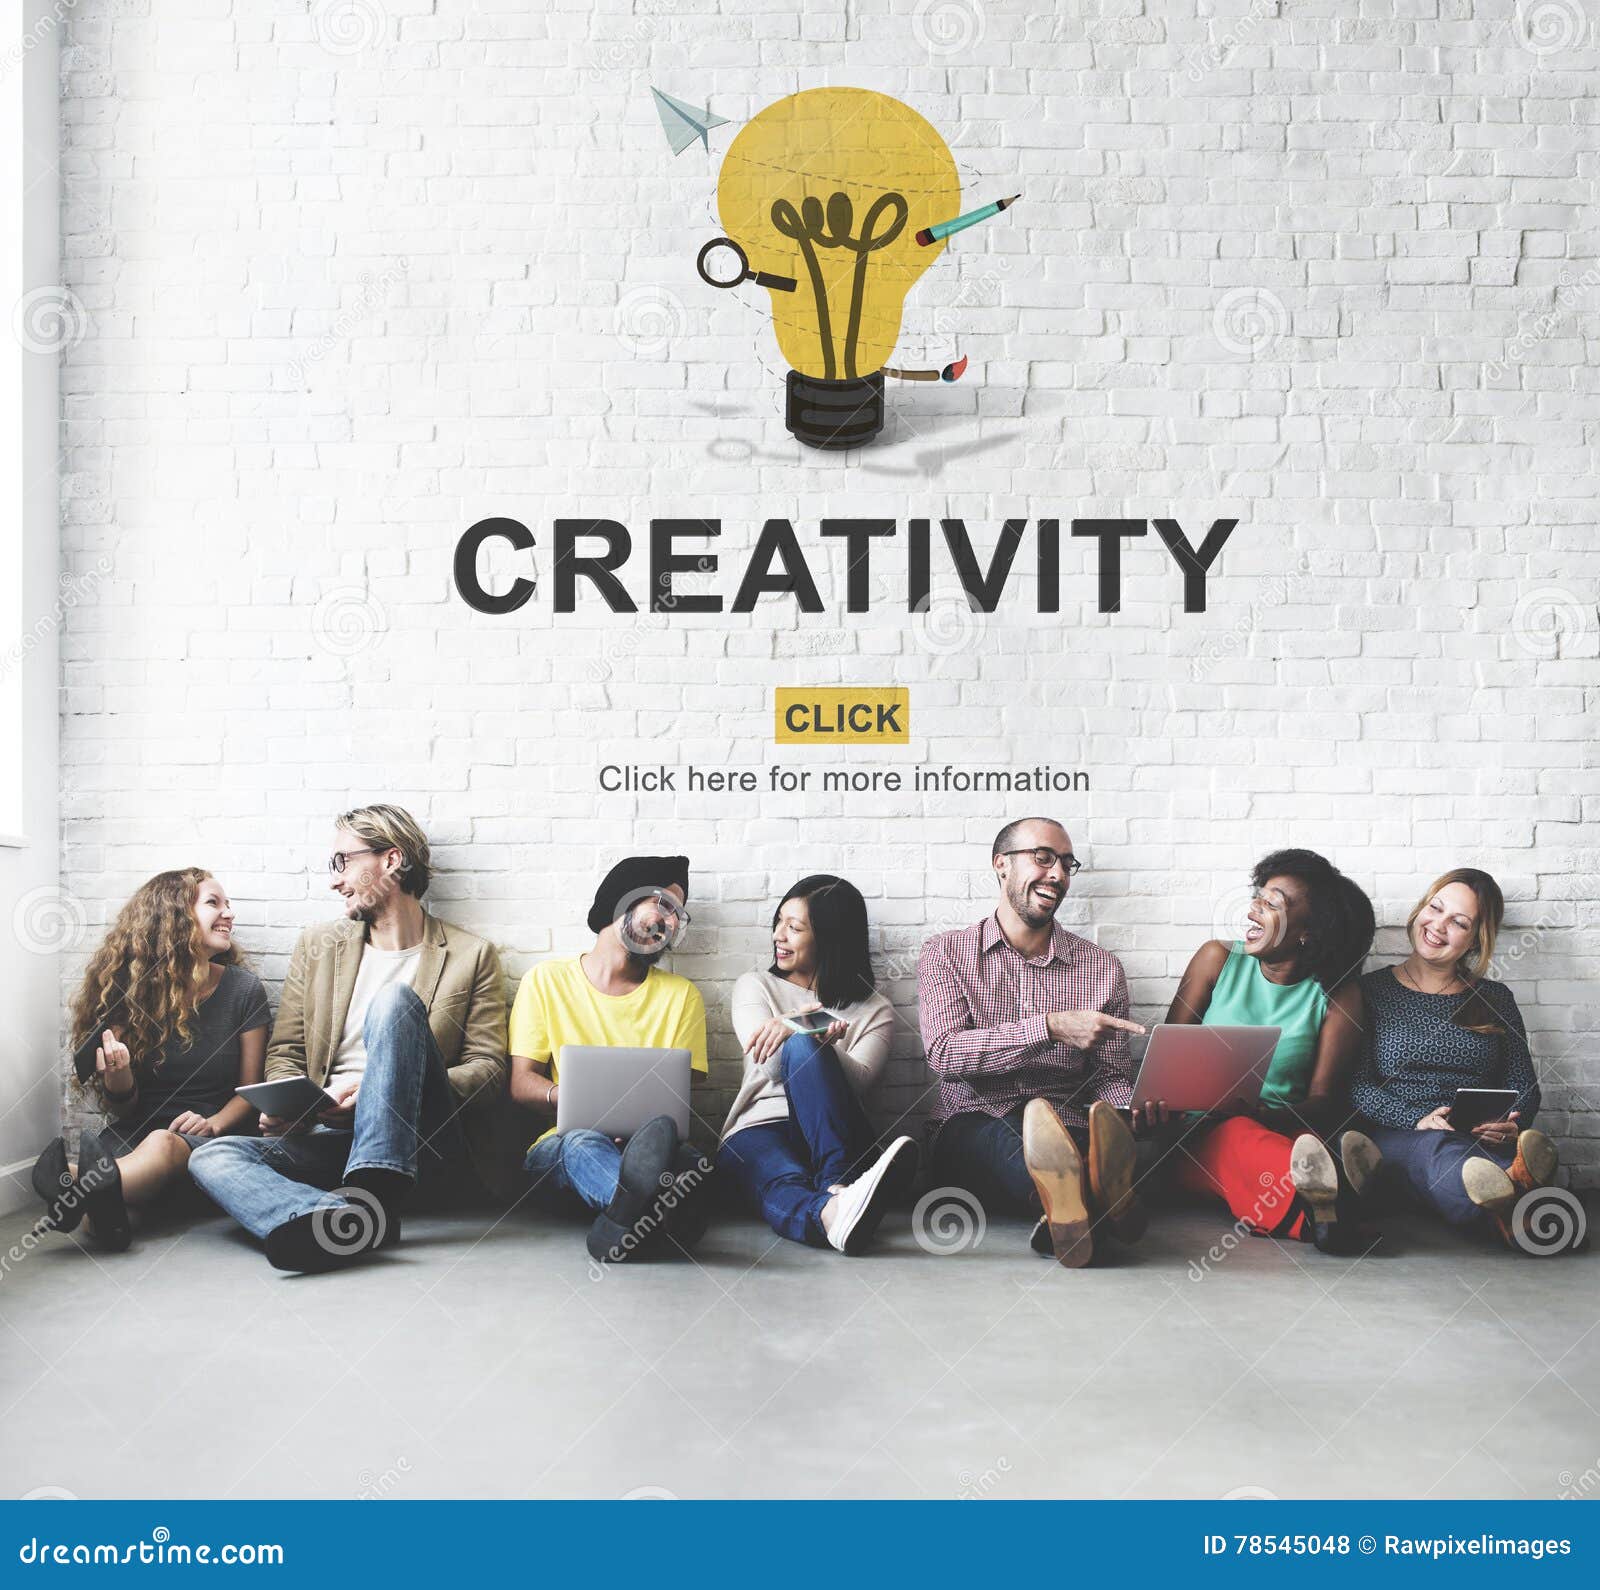 creativity ability ideas imagination innovation concept